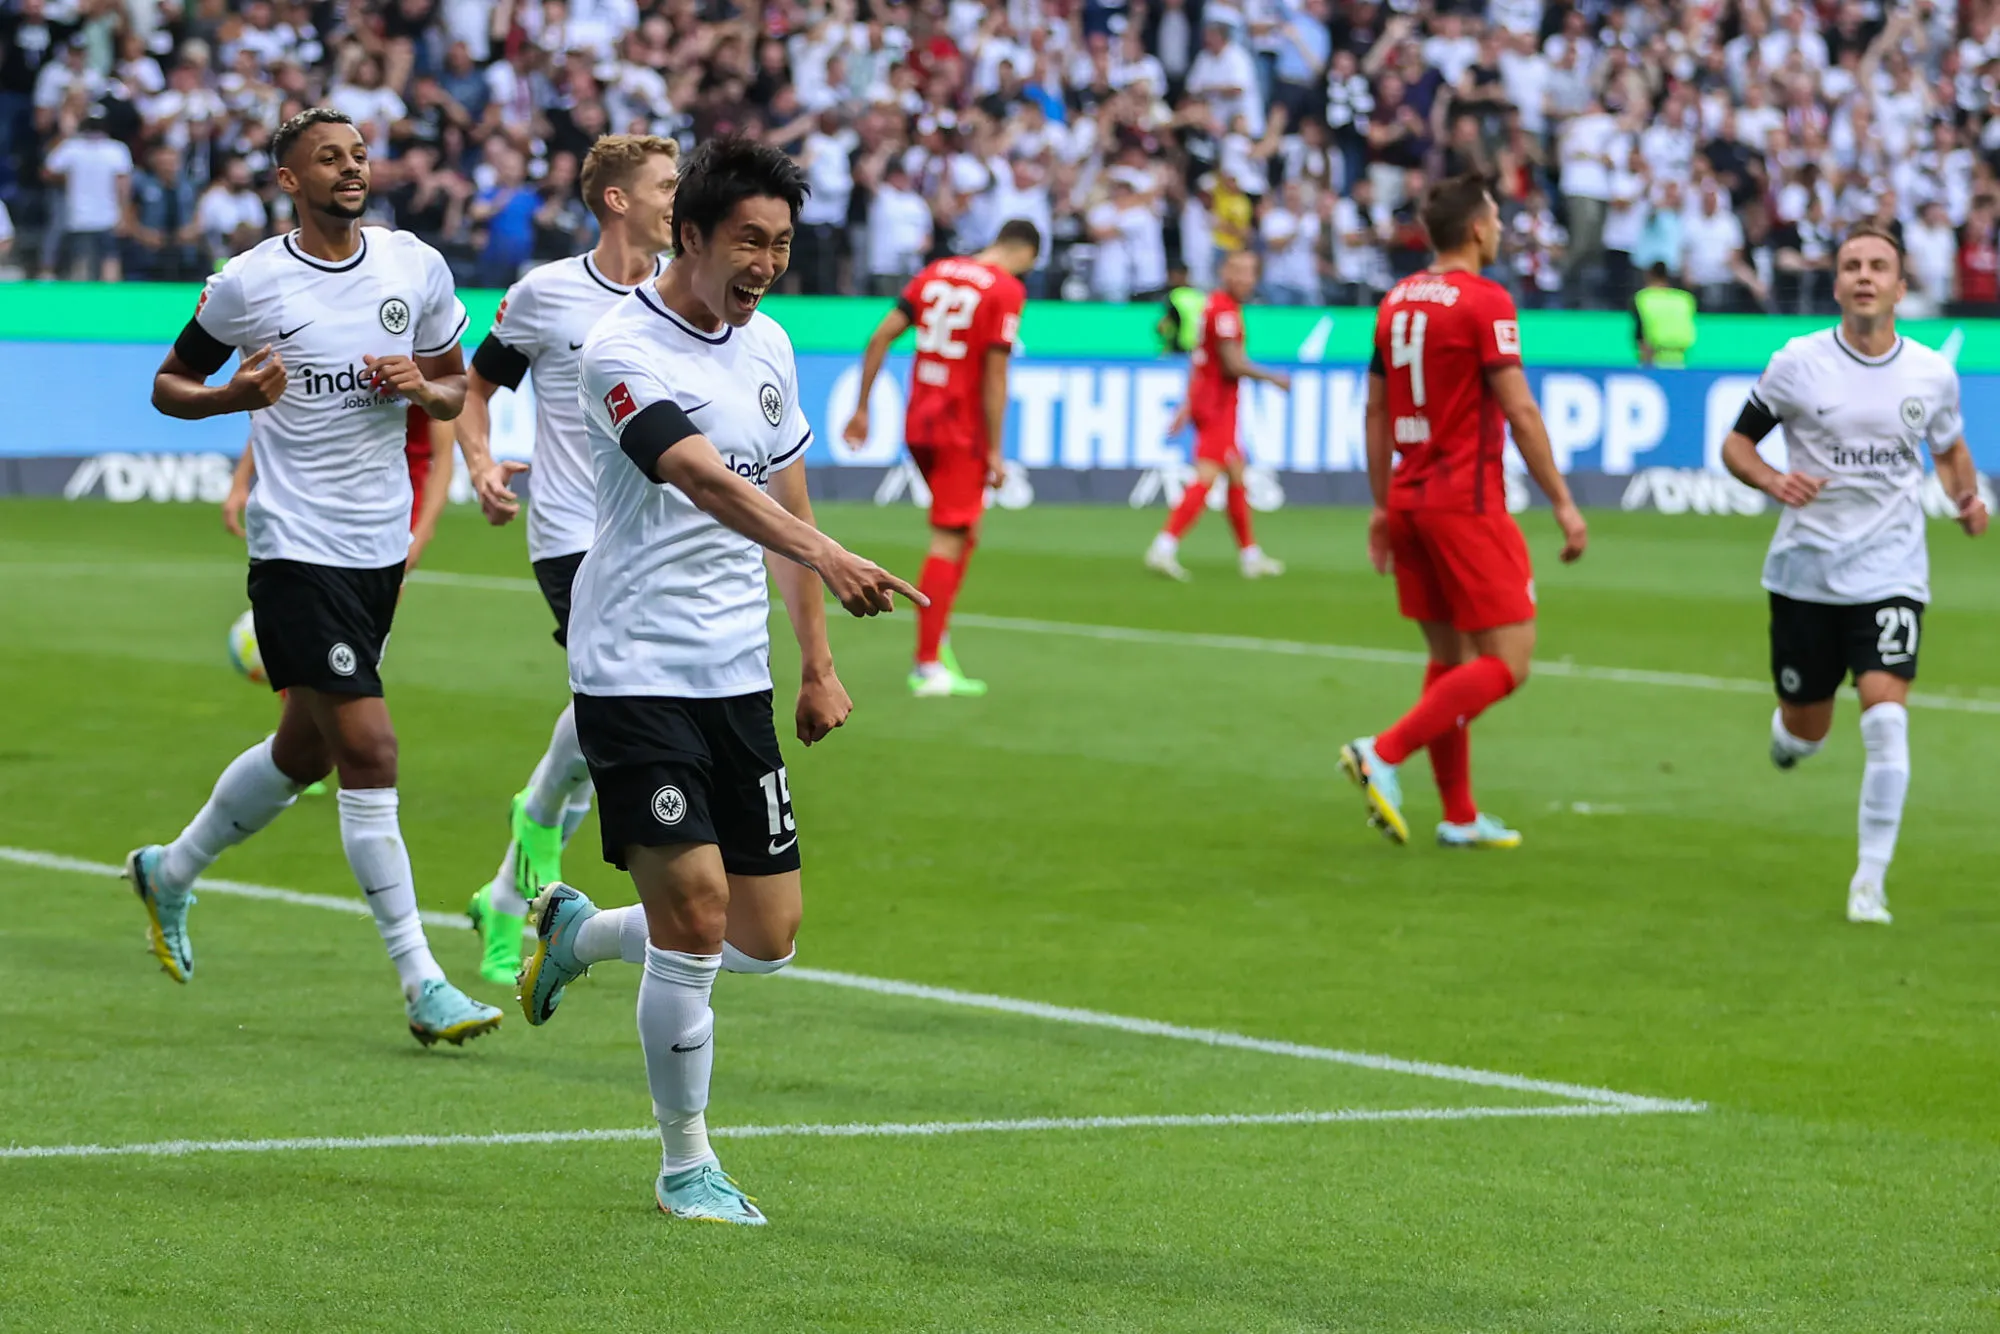 Pronostic Eintracht Francfort Tottenham : Analyse, cotes et prono du match de Ligue des Champions